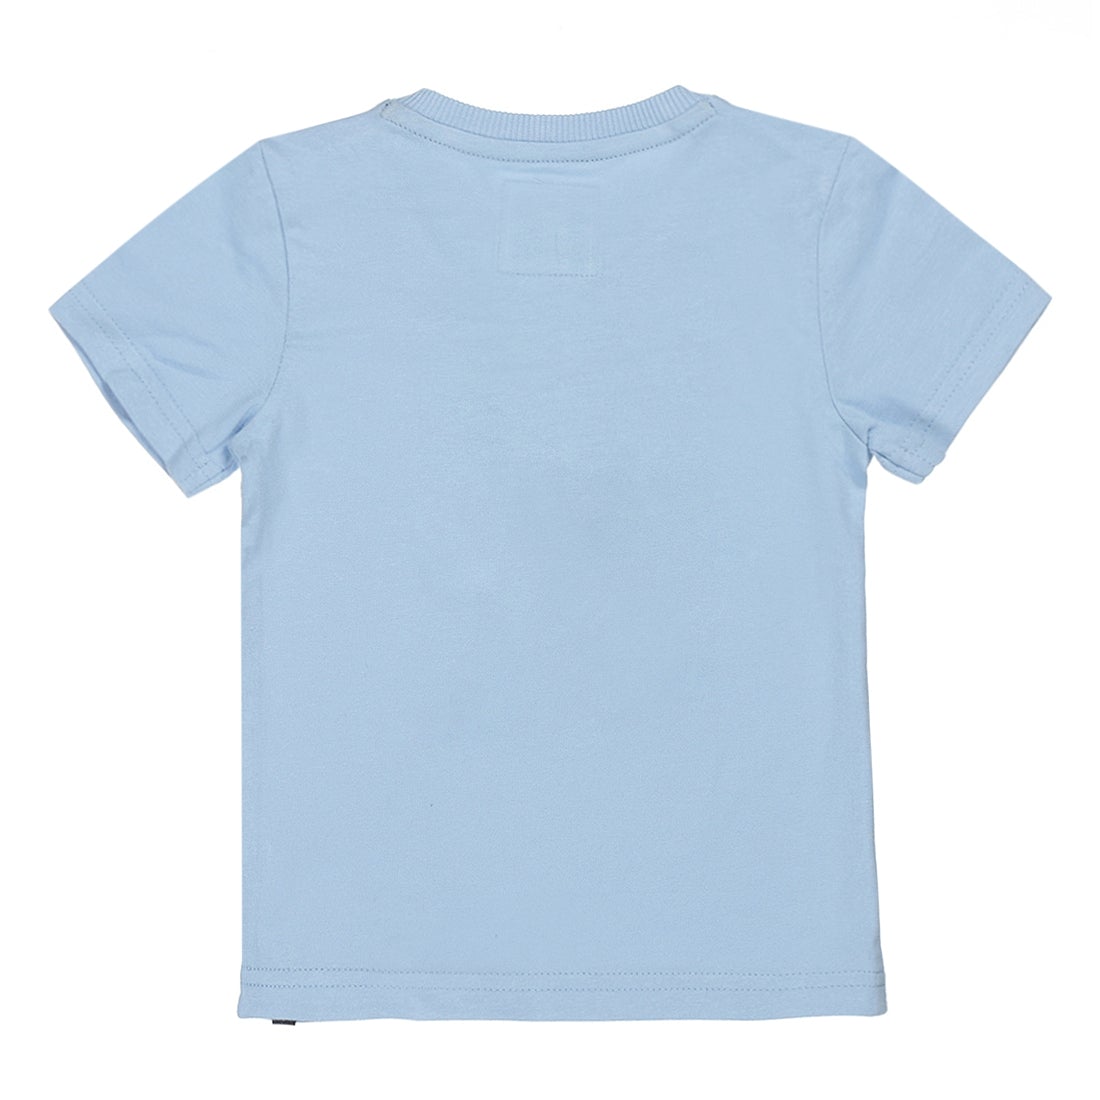 Jongens T-shirt ss van Koko Noko in de kleur Blue in maat 128.